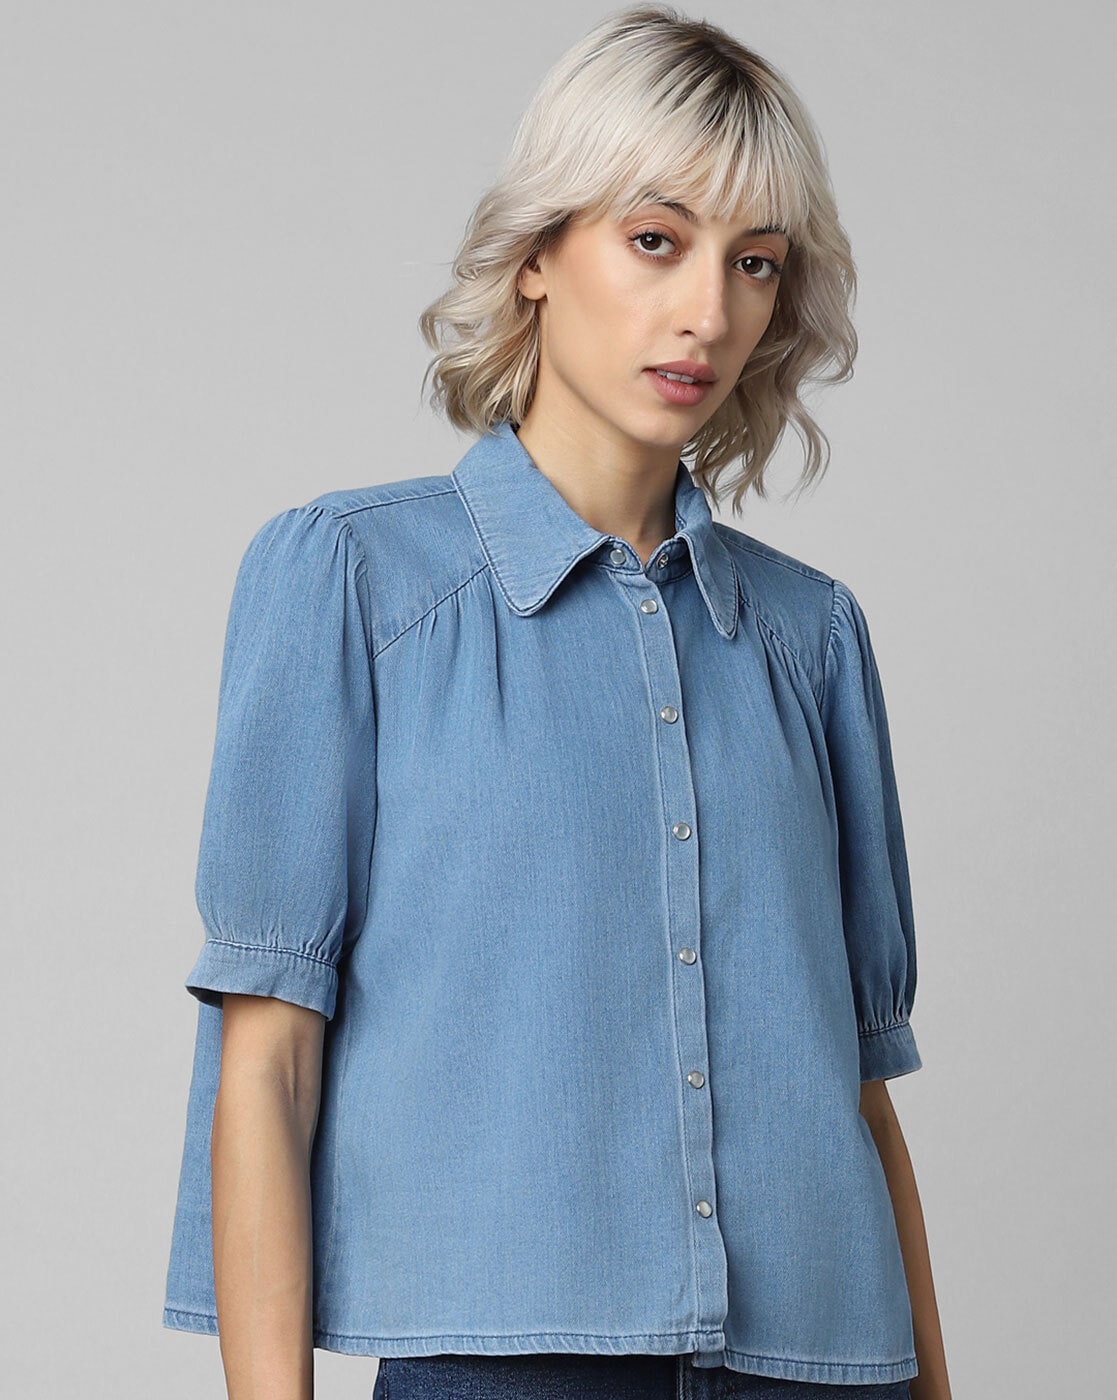 Shop Denim Shirts for Women Online | Women Jeans Shirt | Kraus Jeans